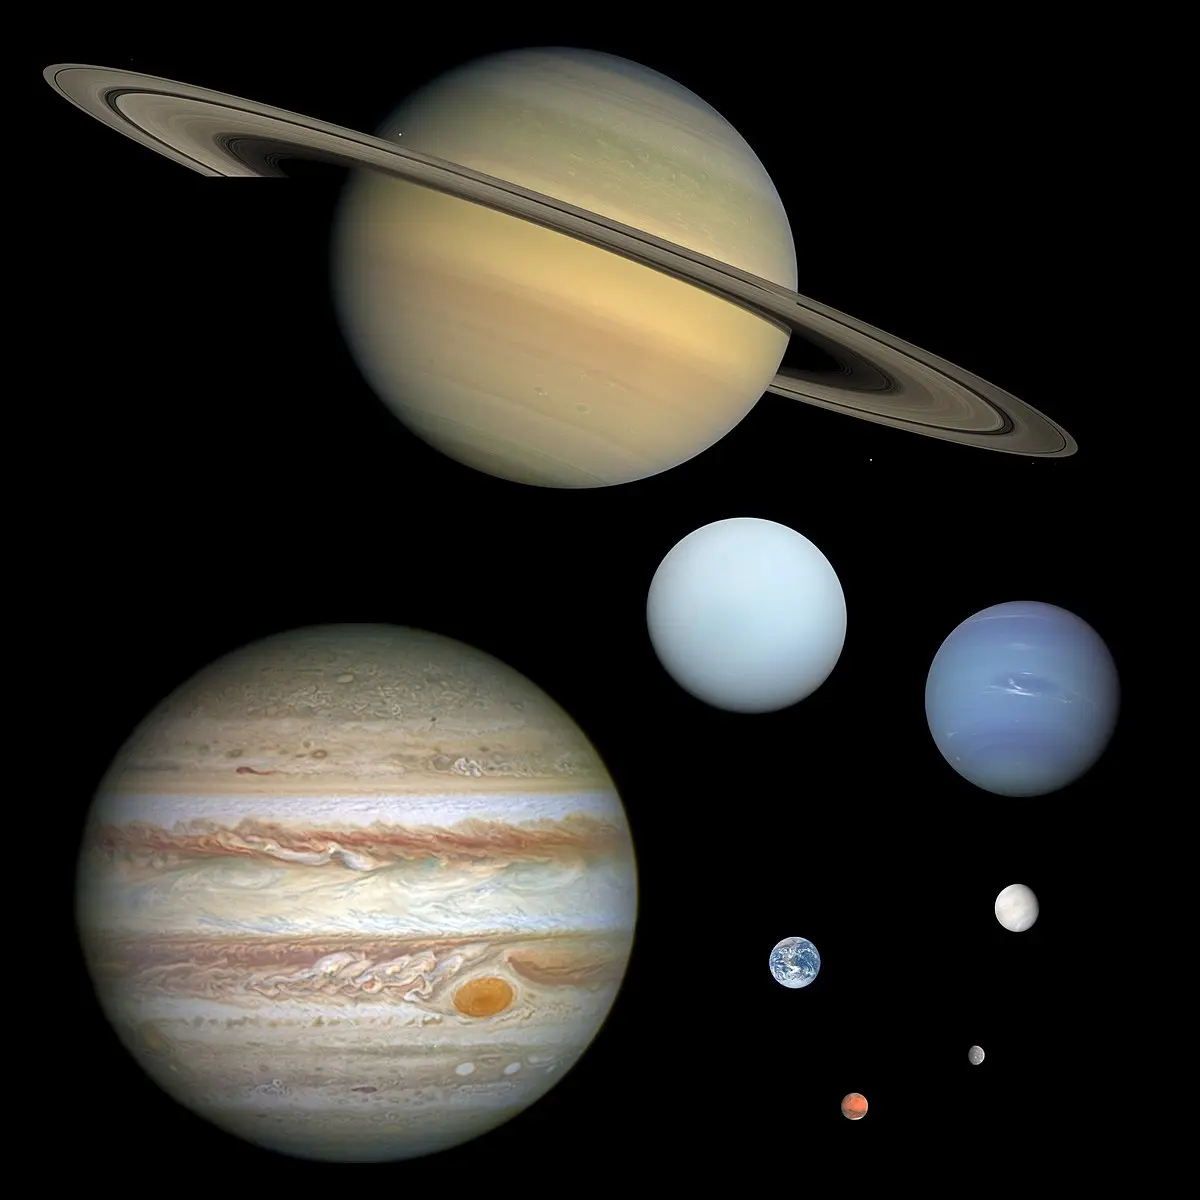 pequeño resumen sobre el sistema solar y sus partes - Qué son los planetas resumen breve